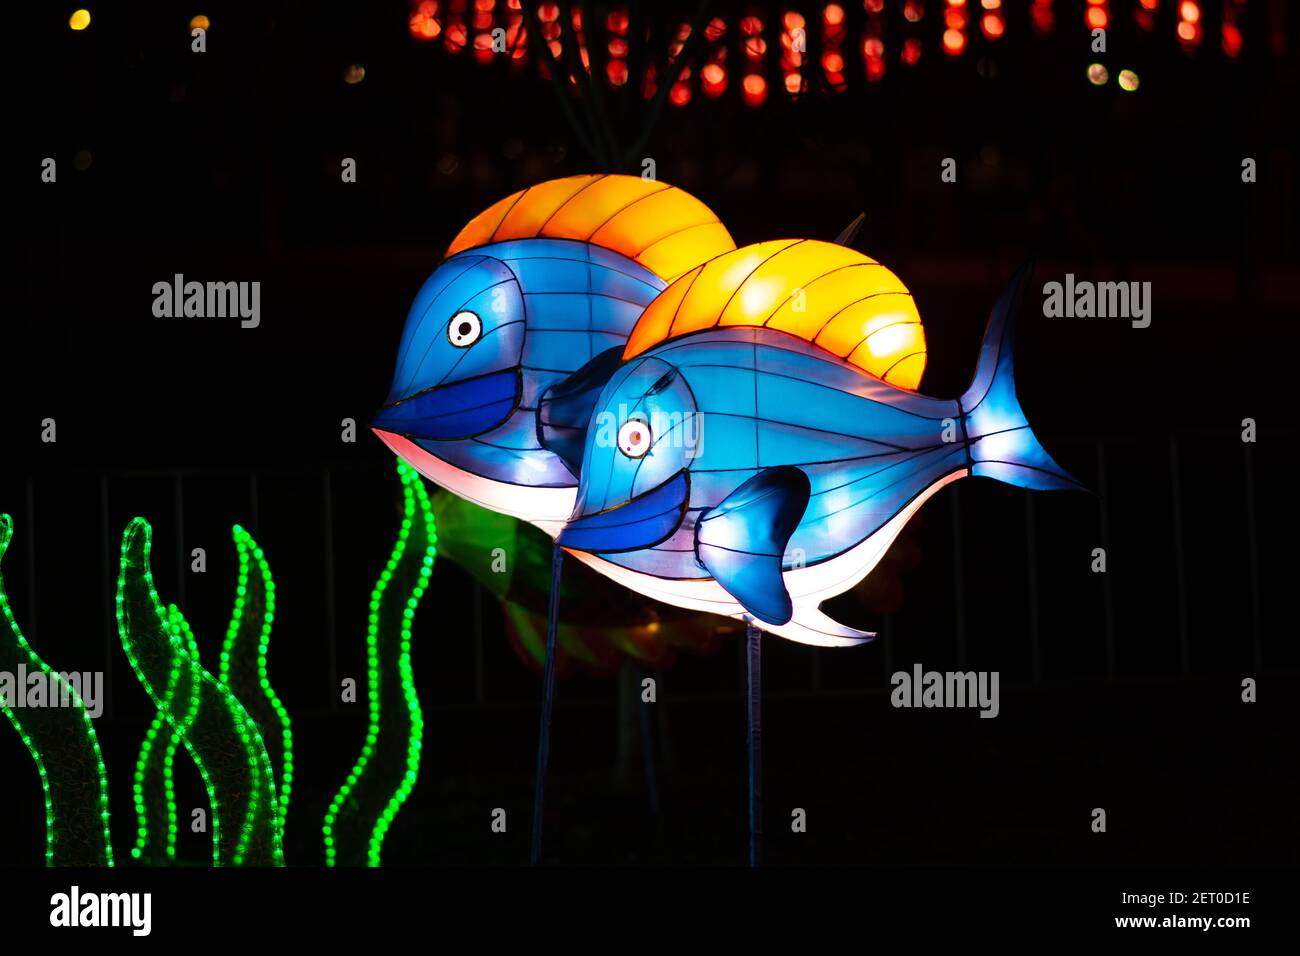 Le Festival des lanternes chinoises au parc de Limanski à Novi Sad. Deux lanternes bleues en forme de poisson avec nageoires dorsales dorées sont fixées sur les bâtonnets. Banque D'Images